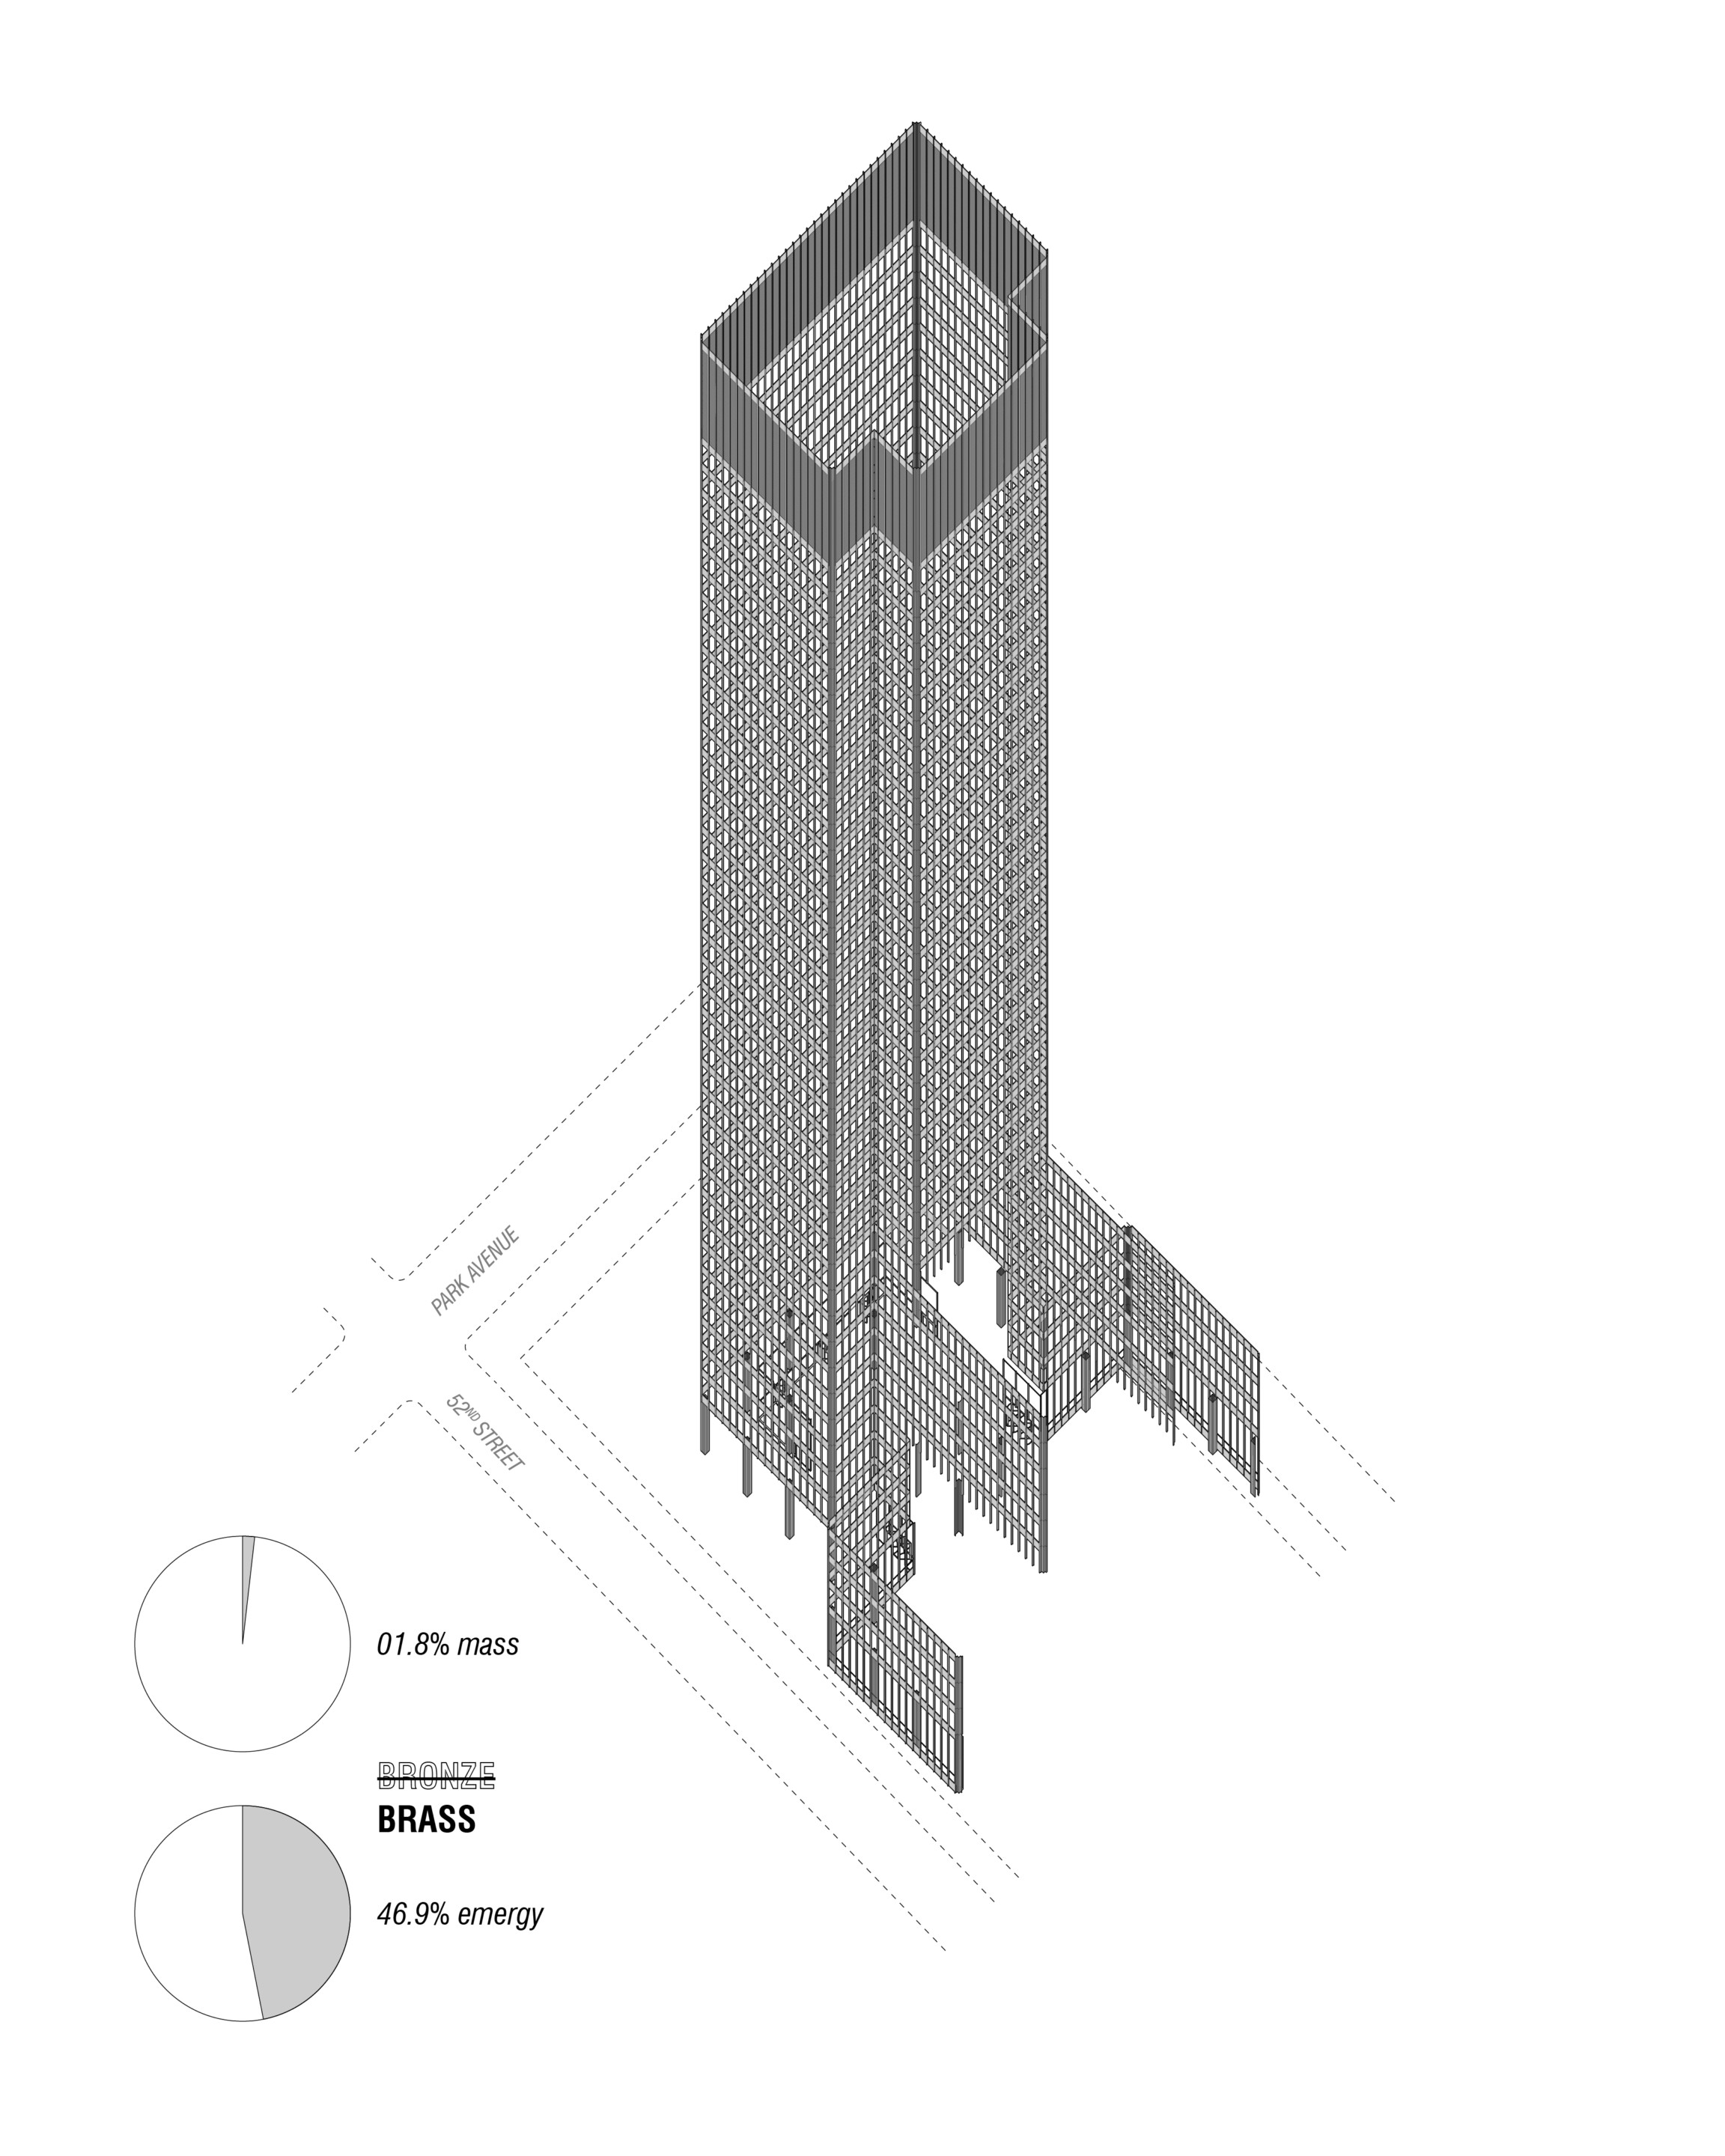 Seagram building  Mies van der rohe